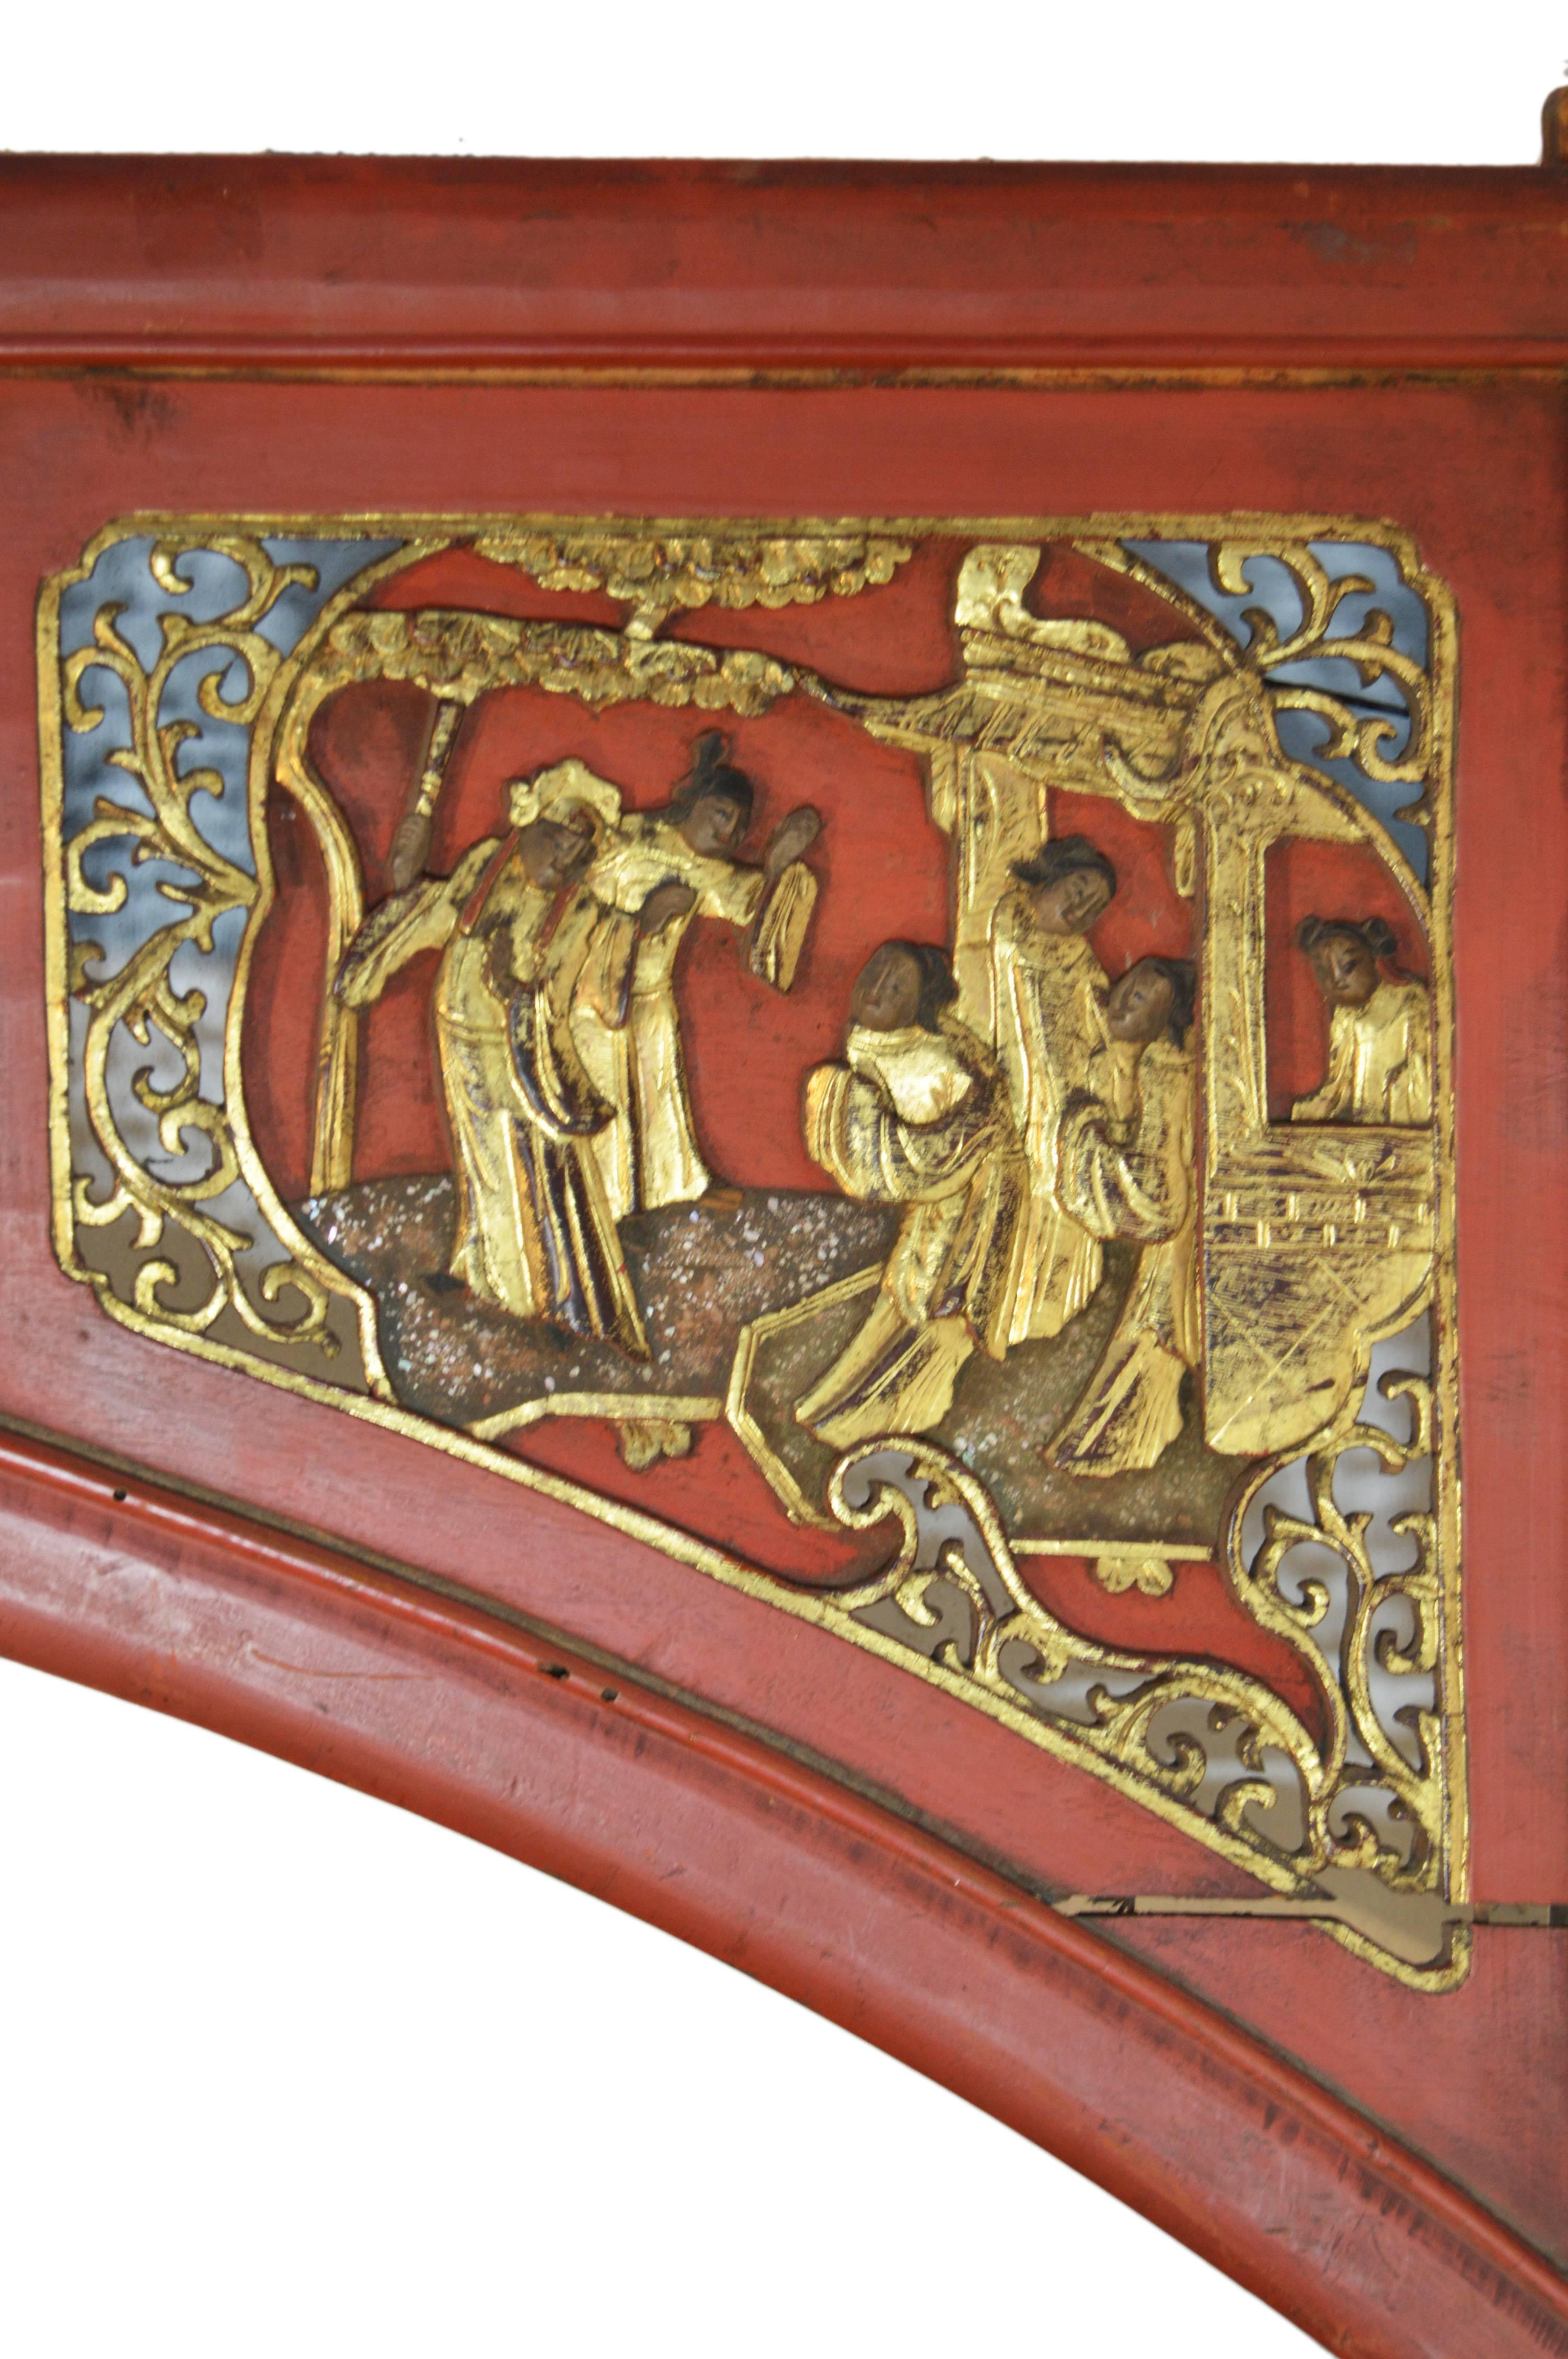 Ein chinesisches Schild mit Szenen aus dem 19. Jahrhundert, handgeschnitzt aus Holz und bemalt. Dieses große hölzerne Schild, das über einer Tür oder sogar als Teil eines Bettes angebracht gewesen sein könnte, hat eine geschwungene Form und enthält